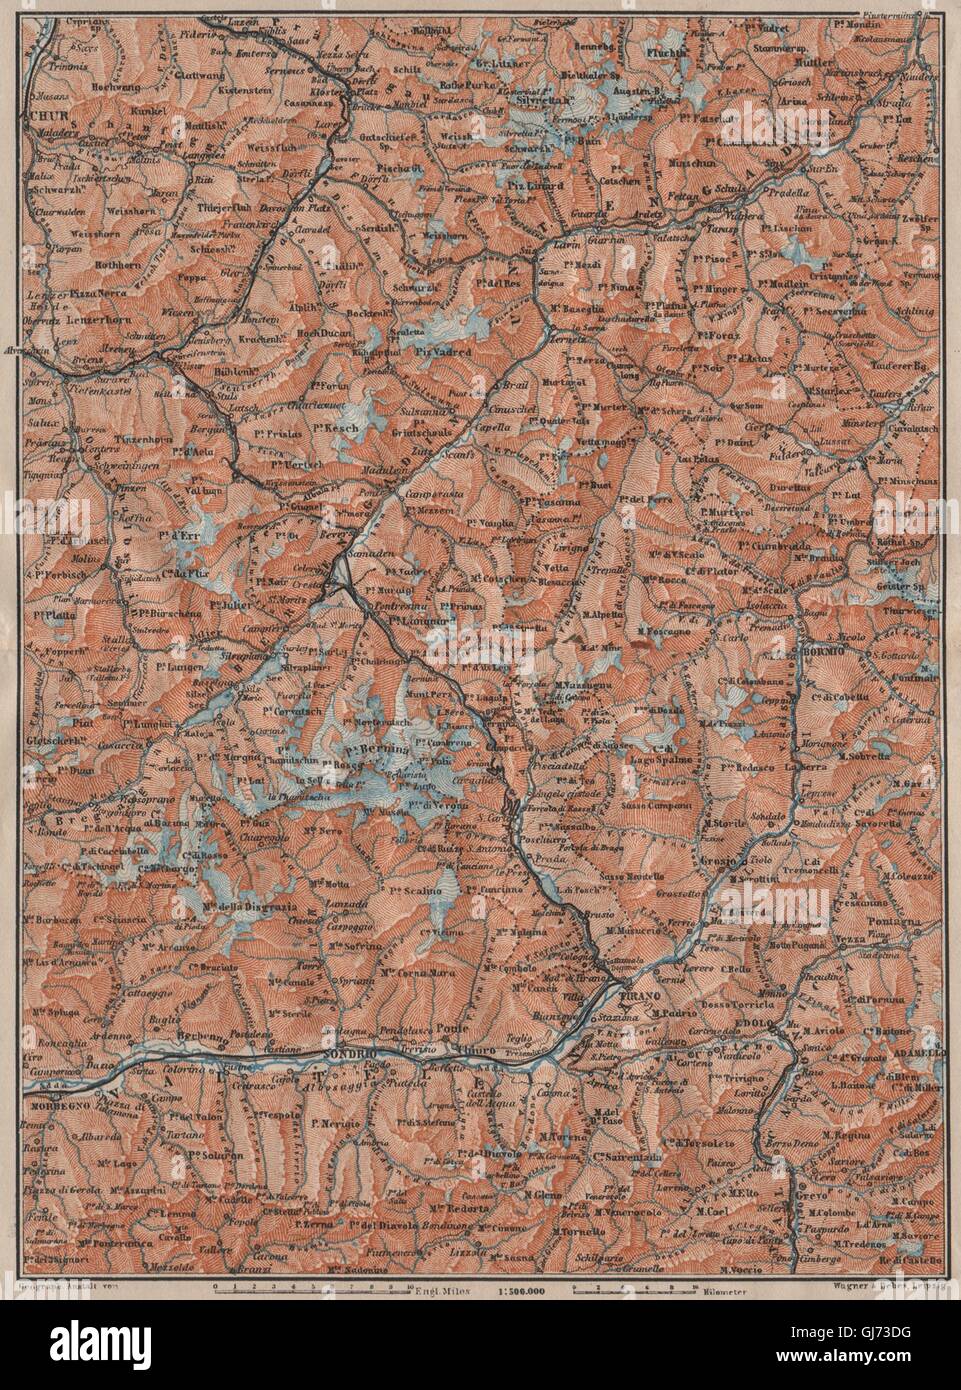 ENGADINE/VAL TELLINA. Davos Arosa Sils Bormio Livigno Sondrio Chur, 1911 map Stock Photo